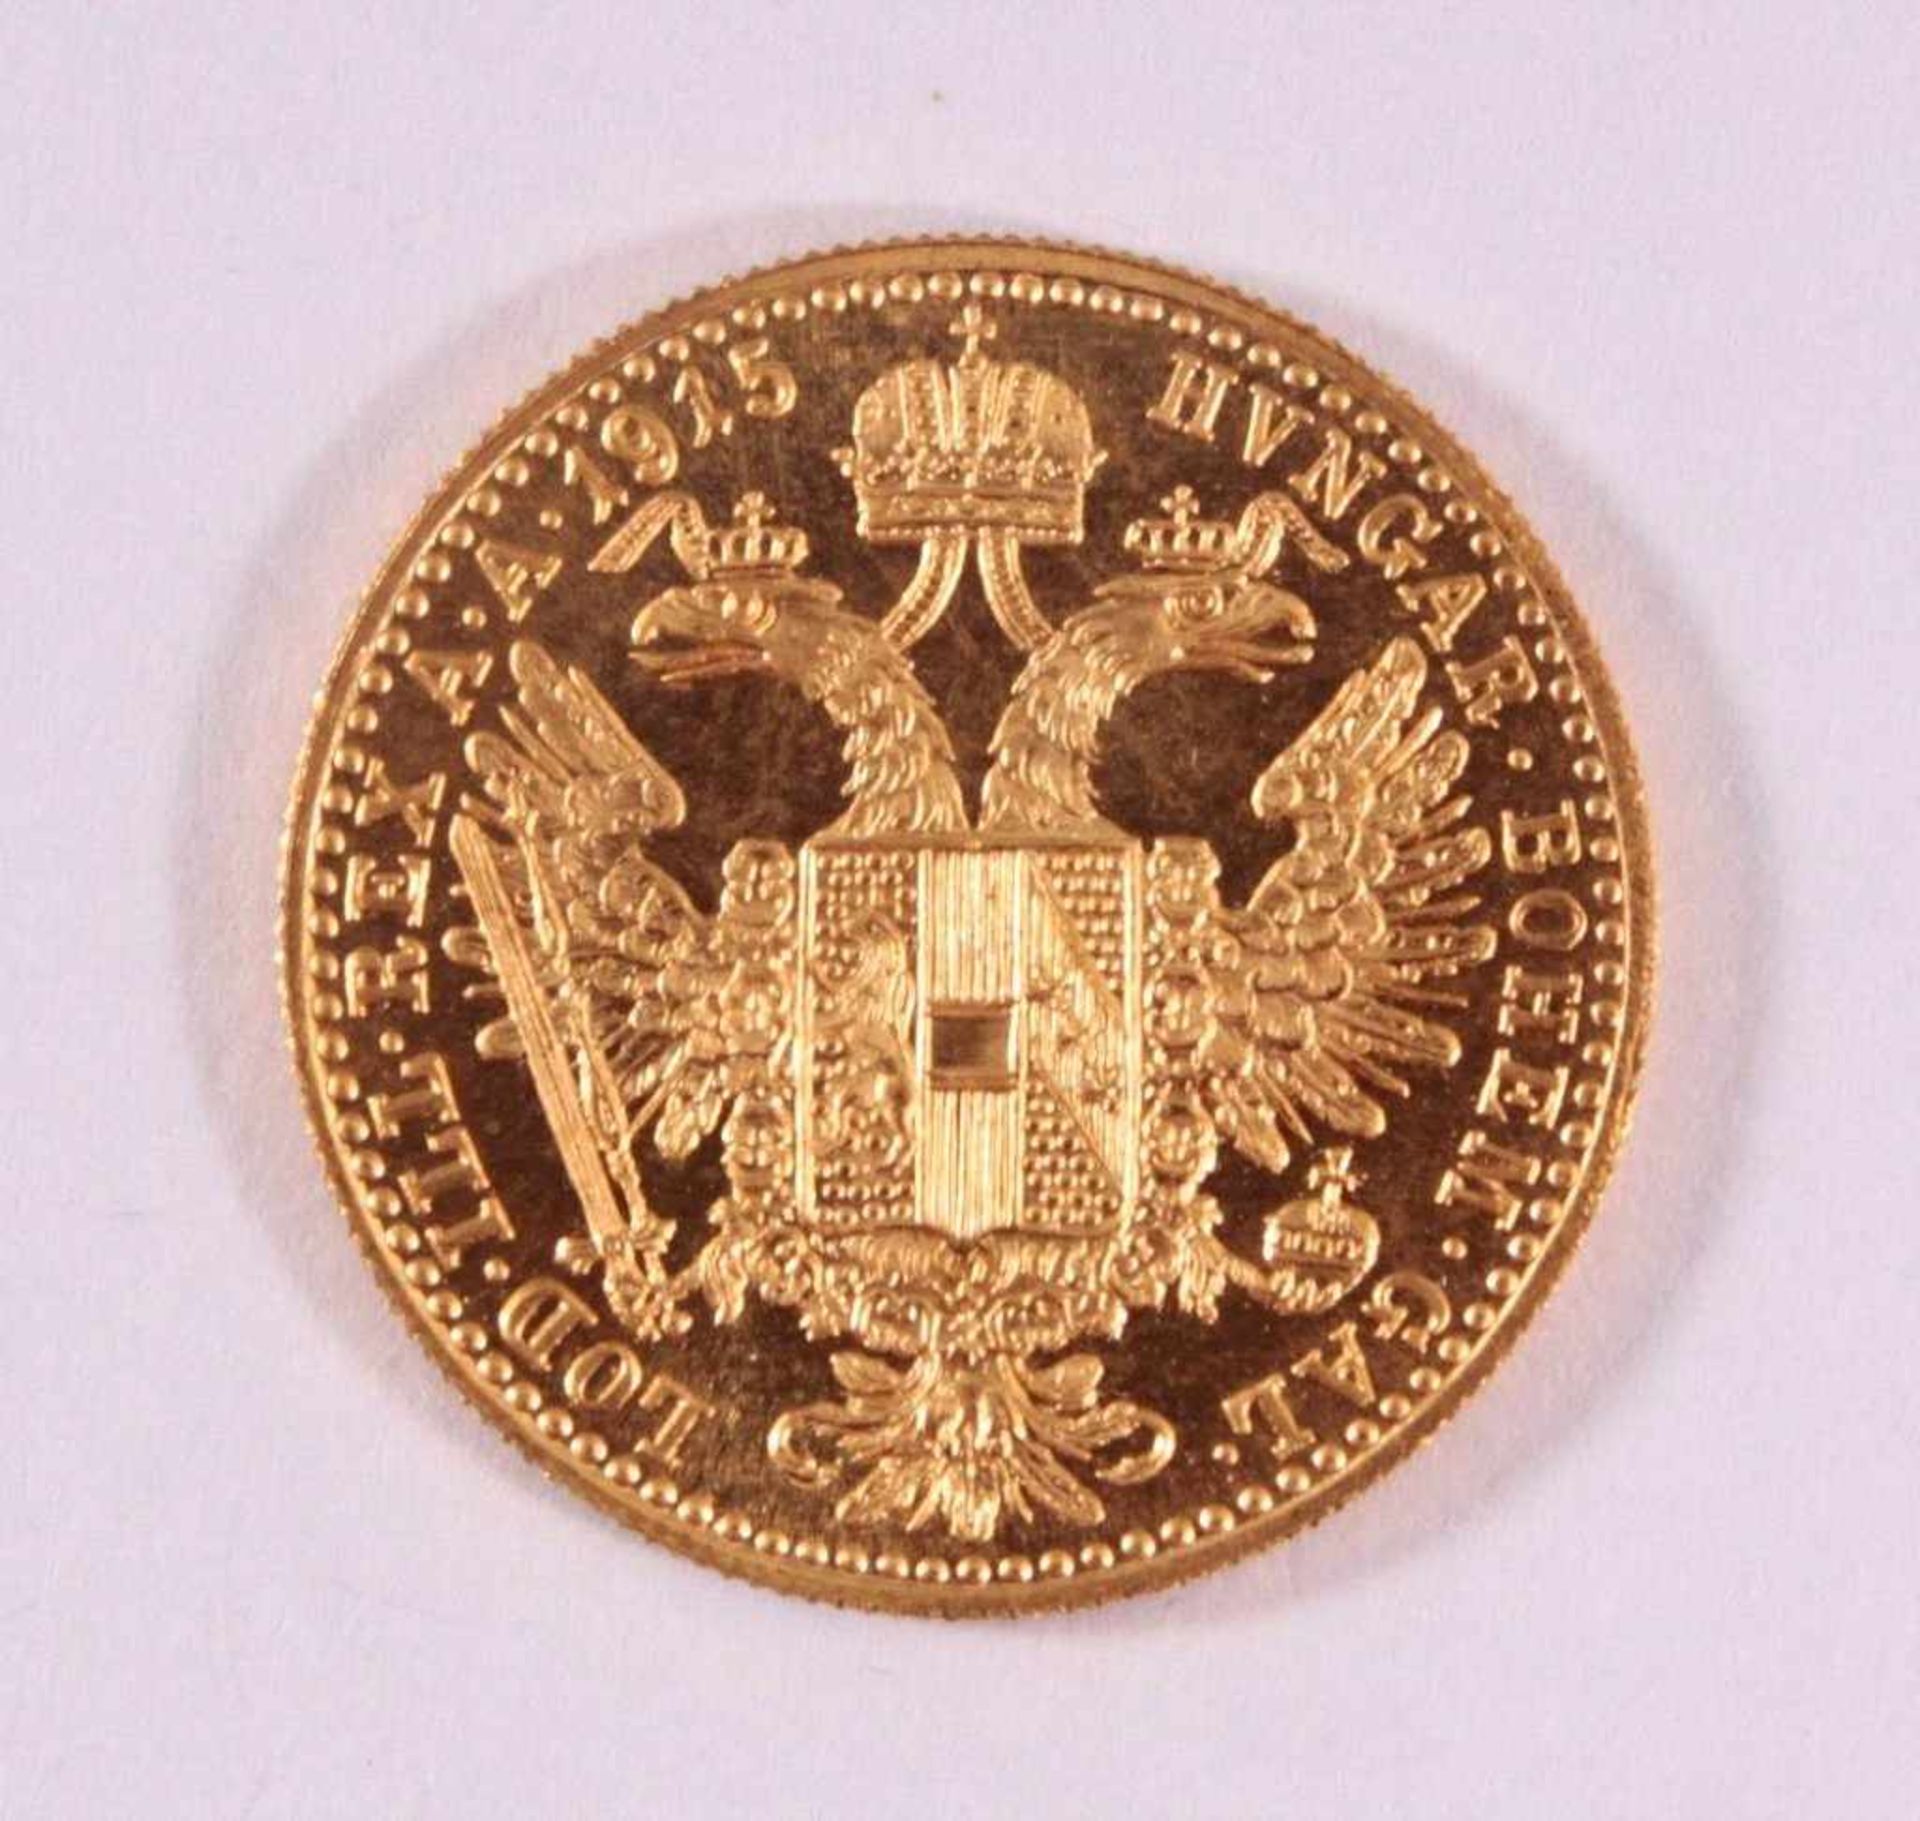 1 Golddukat Kaiser Franz Joseph 1915986er Gold, ca. D-2,0, Gewicht ca. 3,49g - Bild 2 aus 2